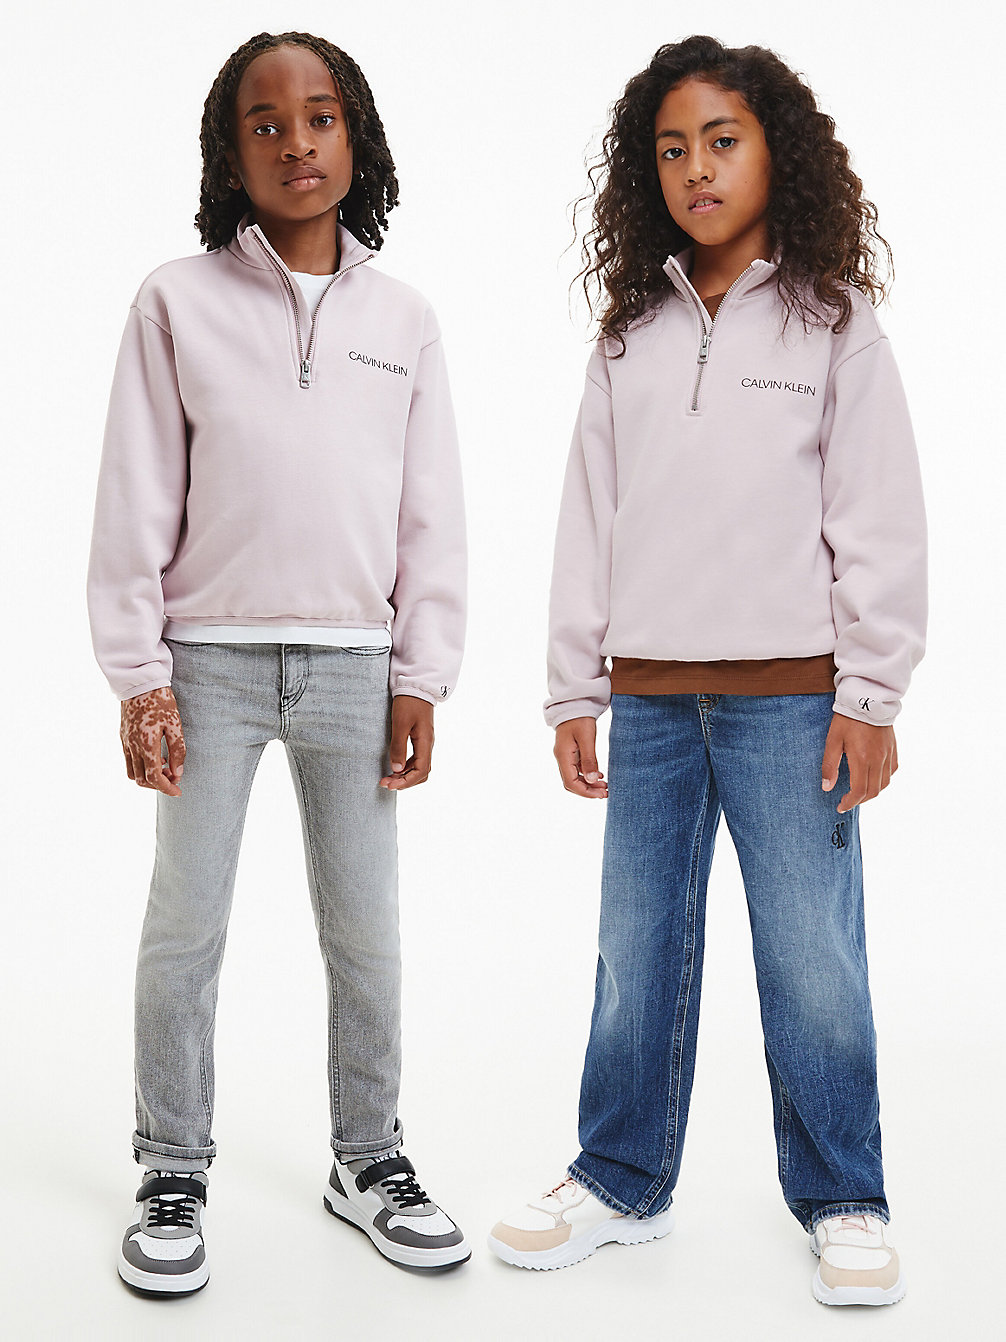 HAWAII ORCHID > Lässiges Unisex Sweatshirt Mit Reißverschlusskragen > undefined kids unisex - Calvin Klein